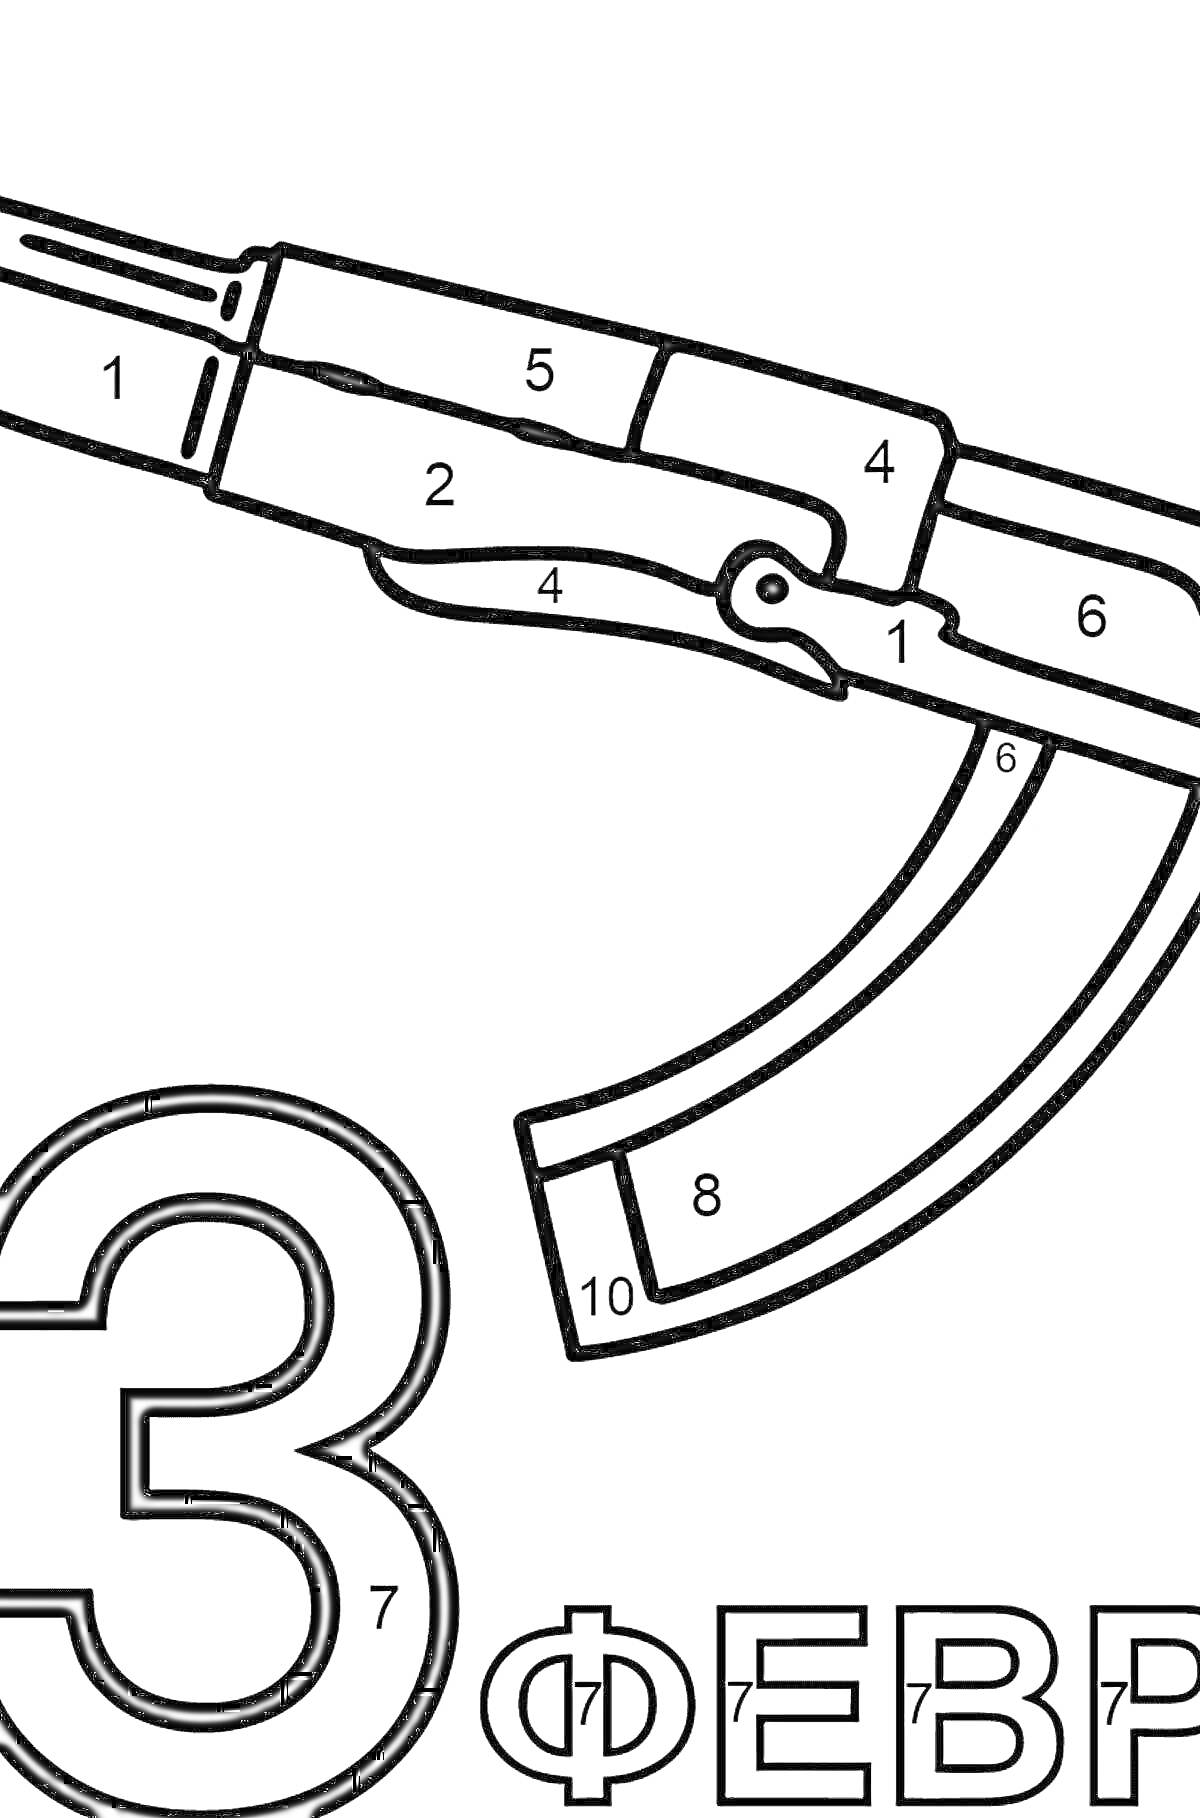 Раскраска автомат калашникова с номерами на деталях, цифра 3, надпись ФЕВРАЛЯ